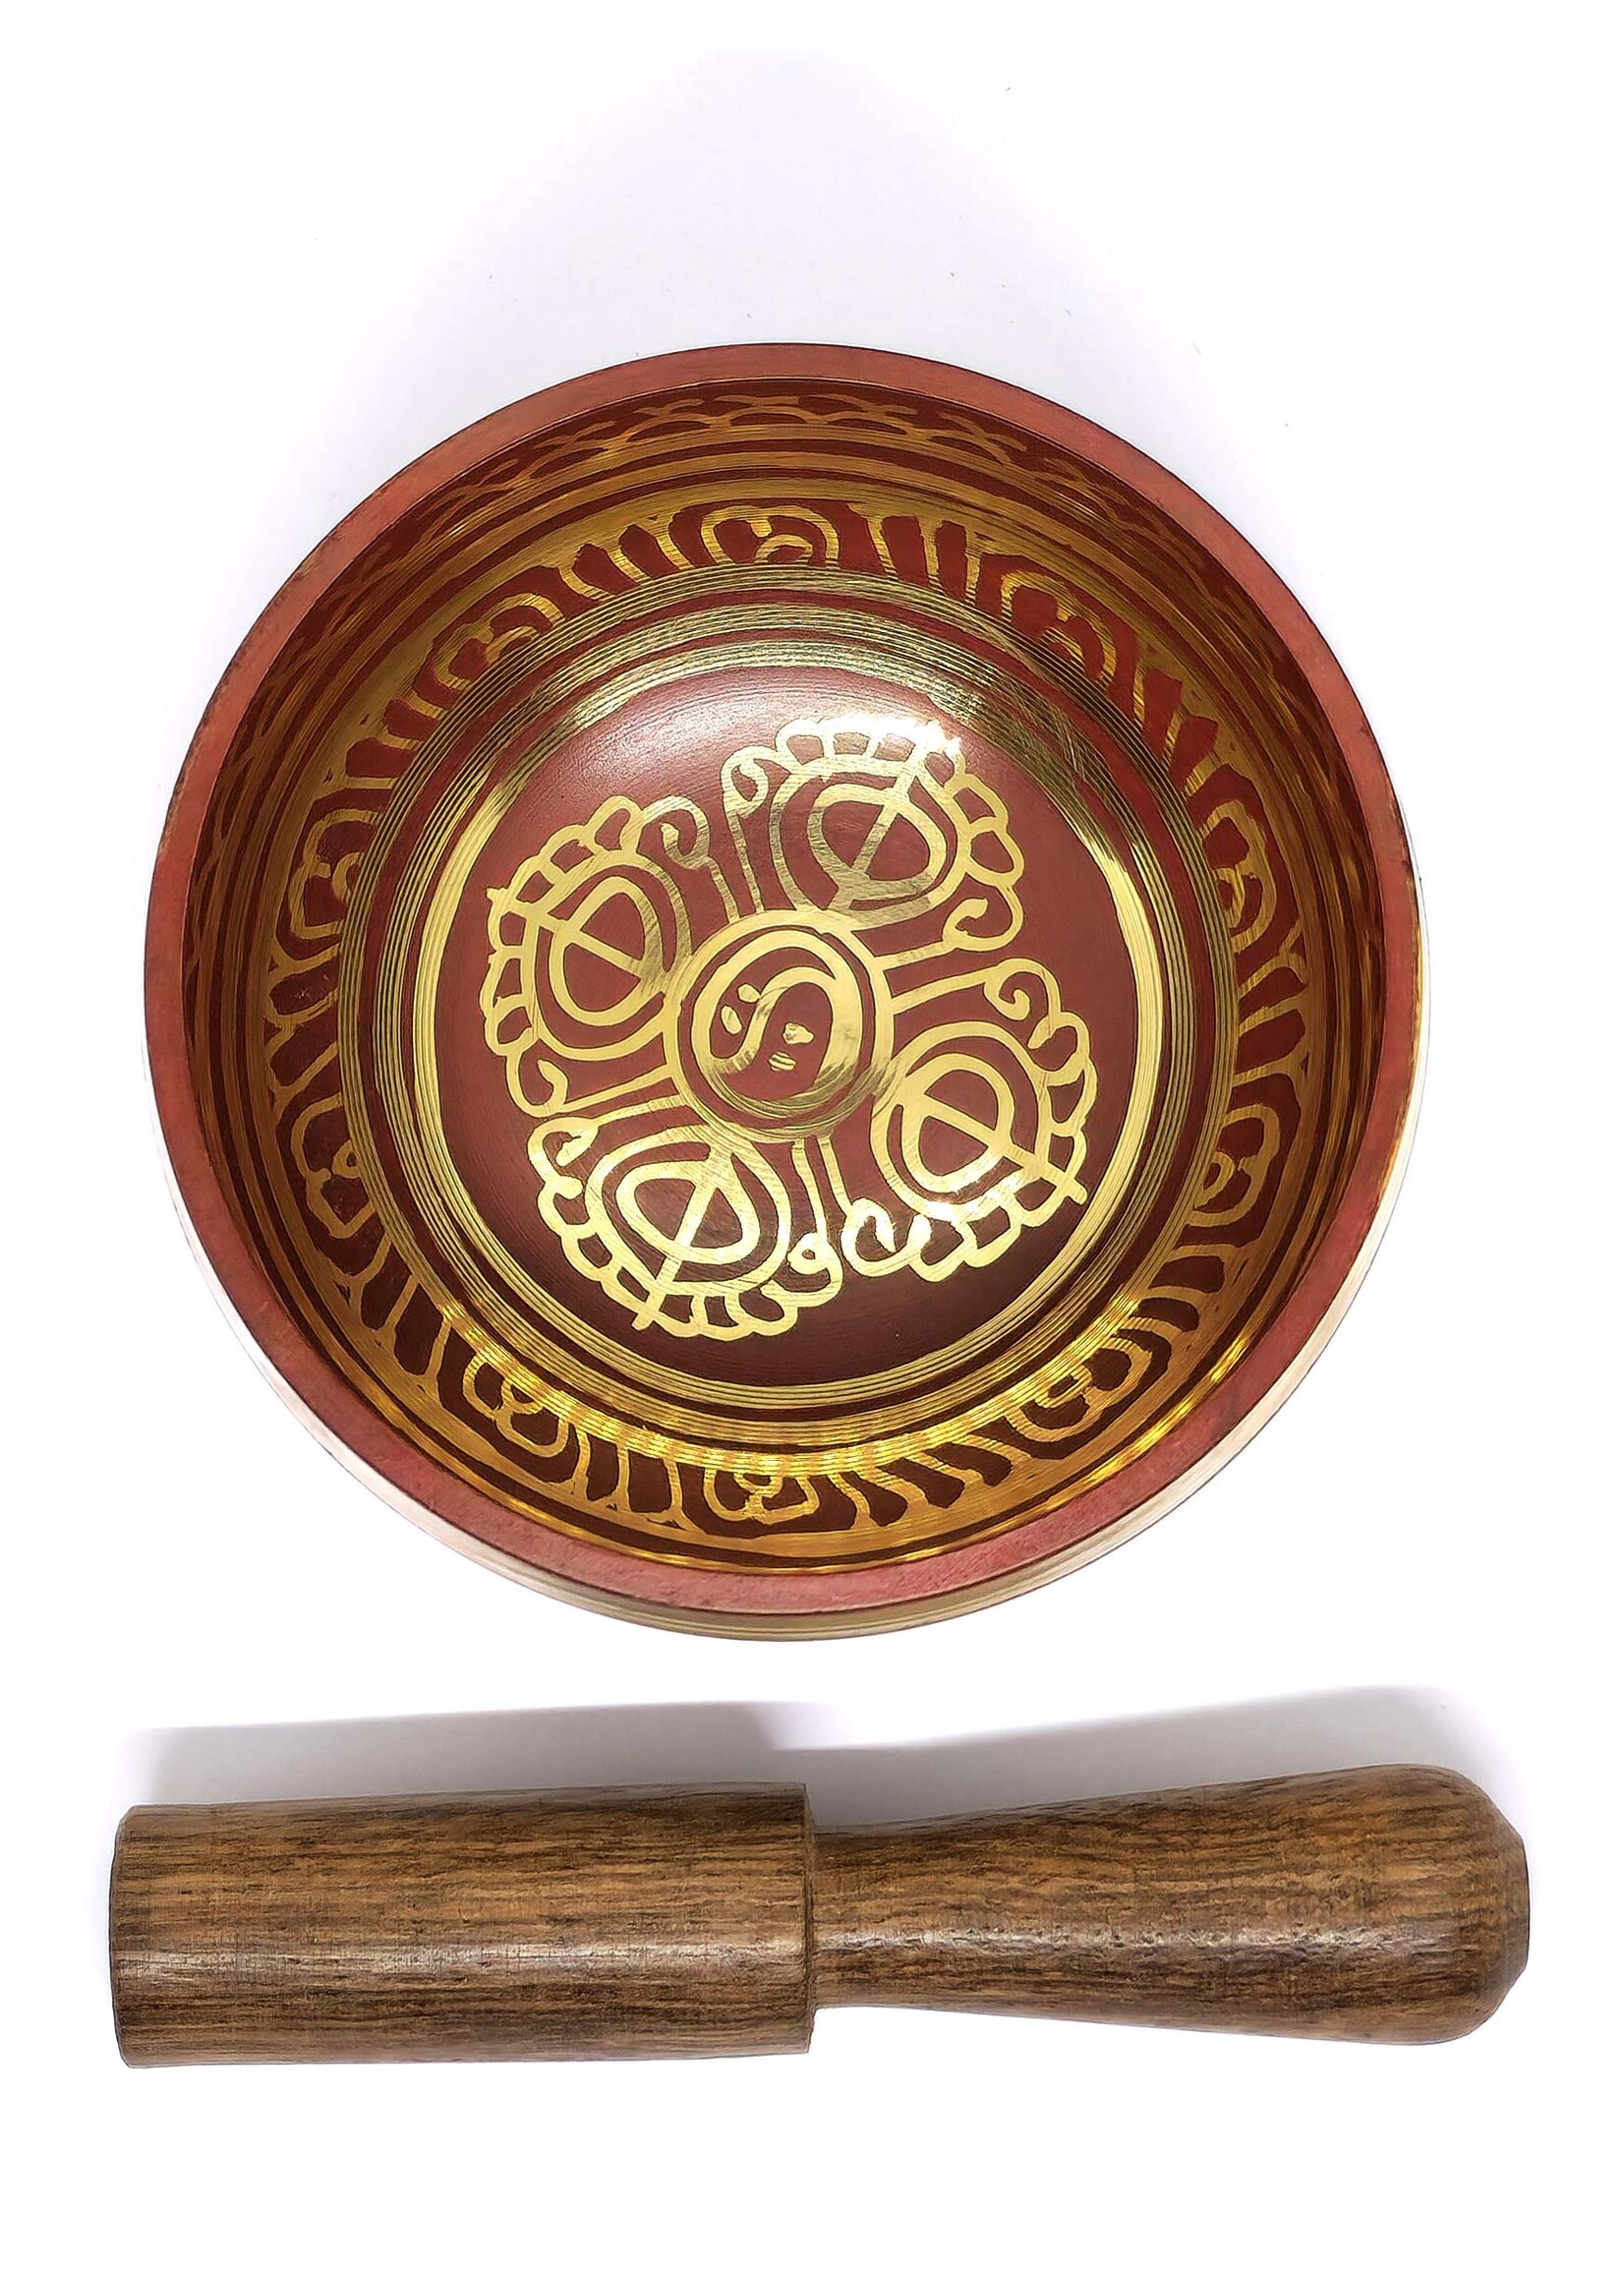 Tibetische Klangschale aus Messing mit Mantra, 3-teilig, rot, Ø 8cm, 190g